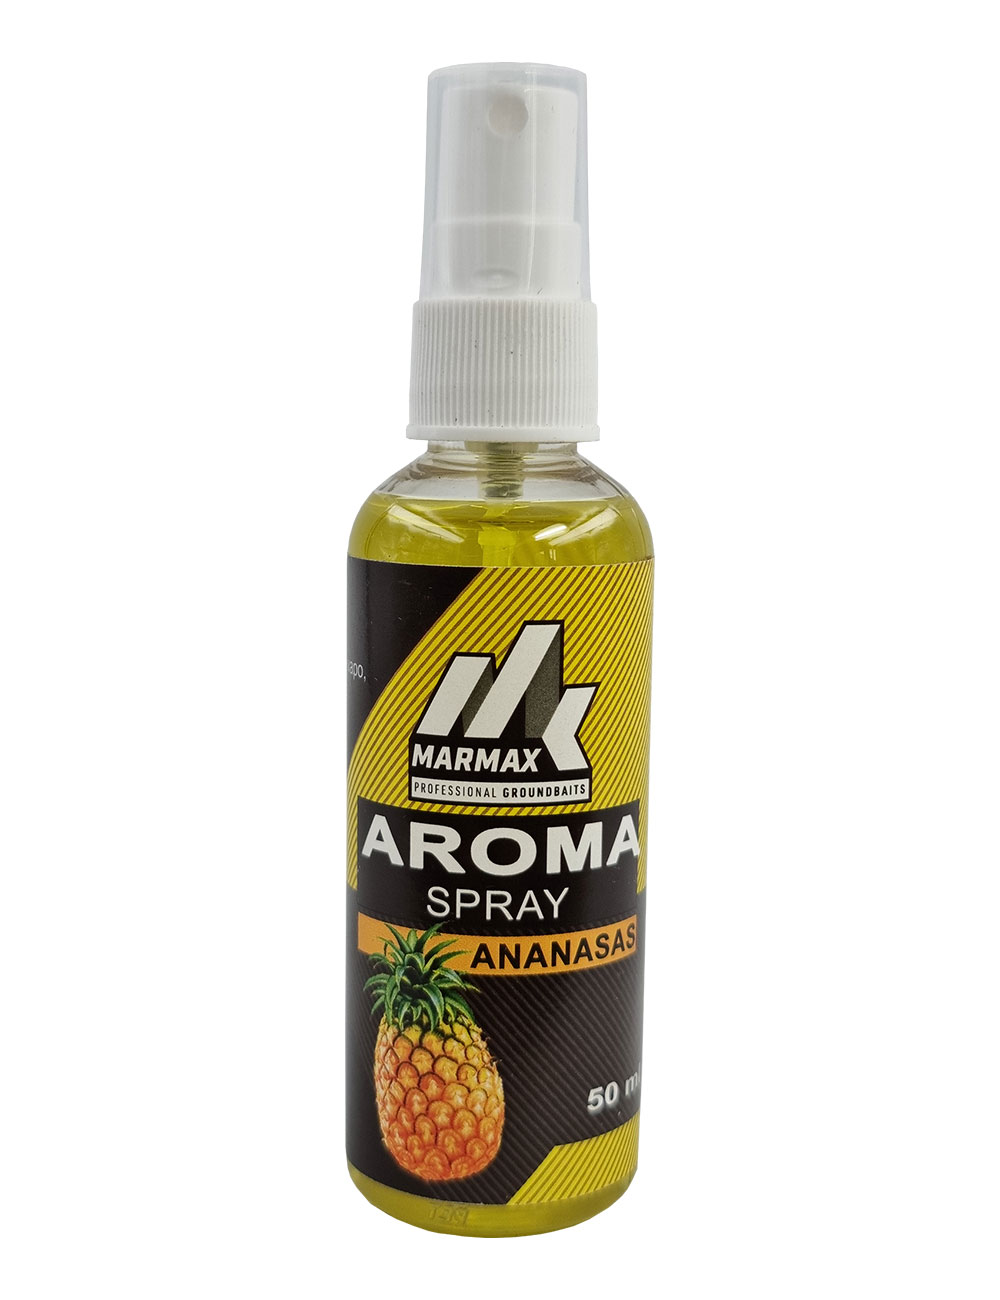 Aroma Spray - Ananasas